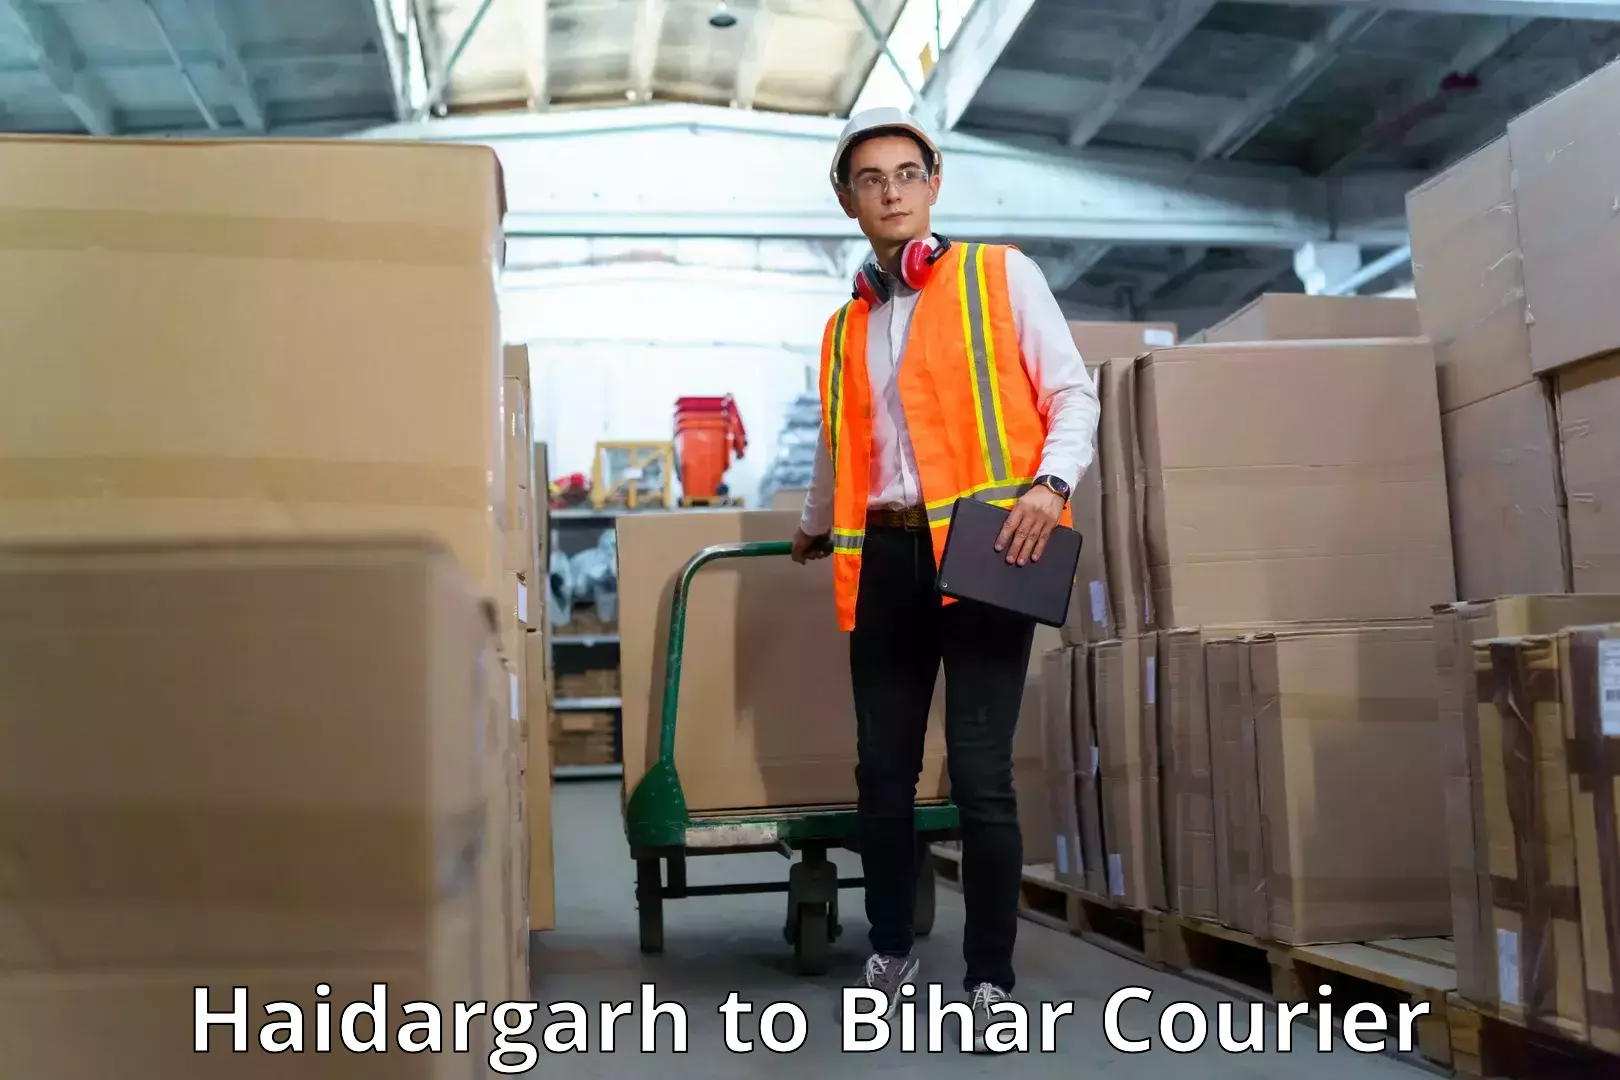 Next-generation courier services Haidargarh to Aurangabad Bihar